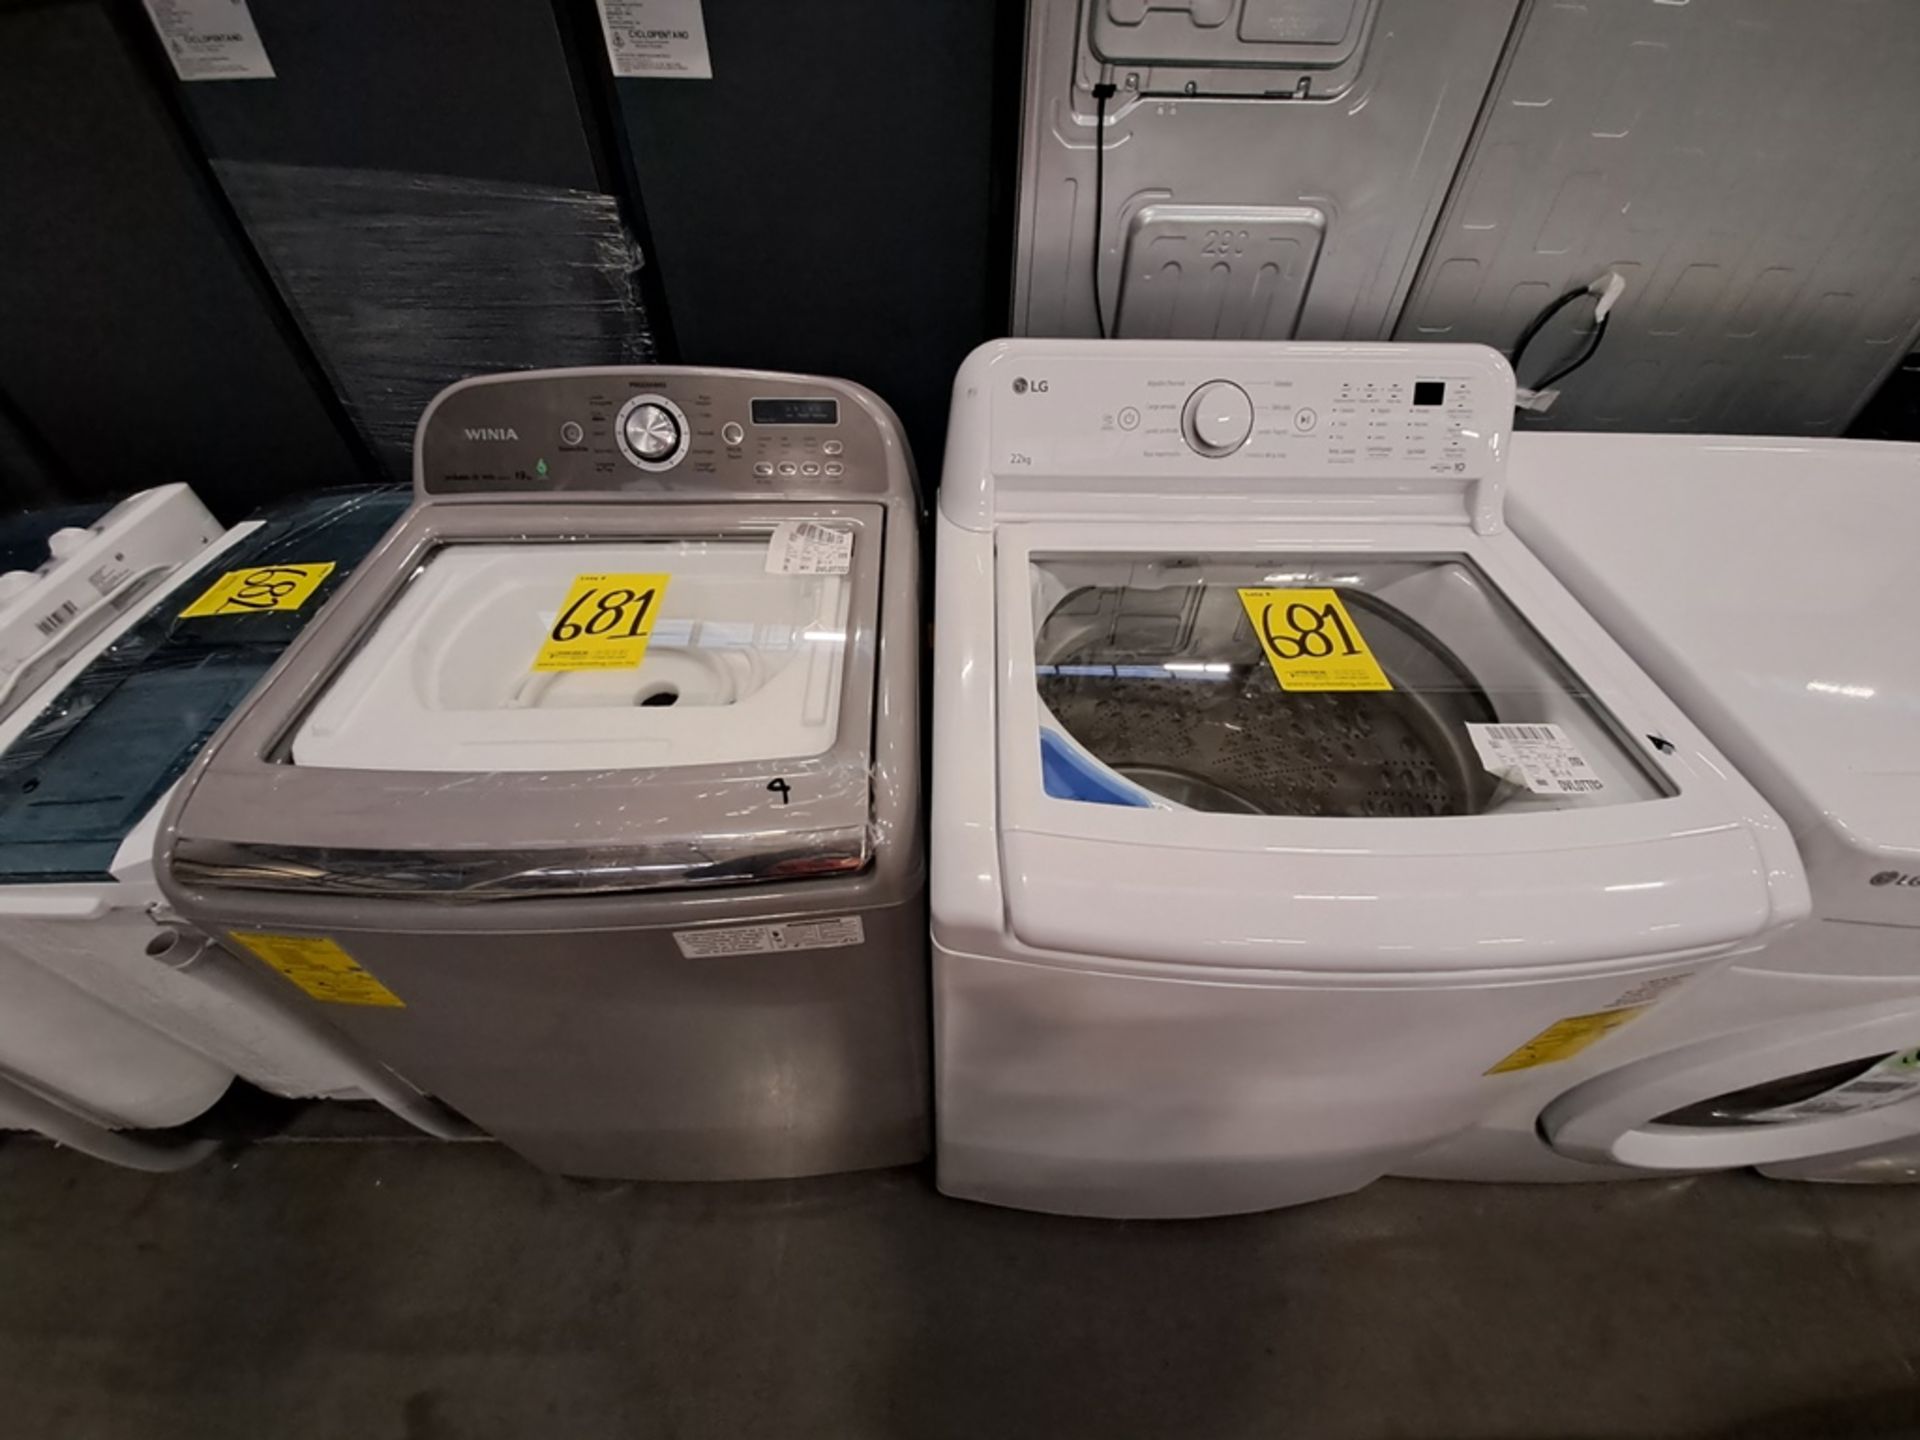 Lote de 2 lavadoras contiene: 1 Lavadora de 22 KG Marca LG, Modelo WT22WT6HK, Serie 82022, Color BL